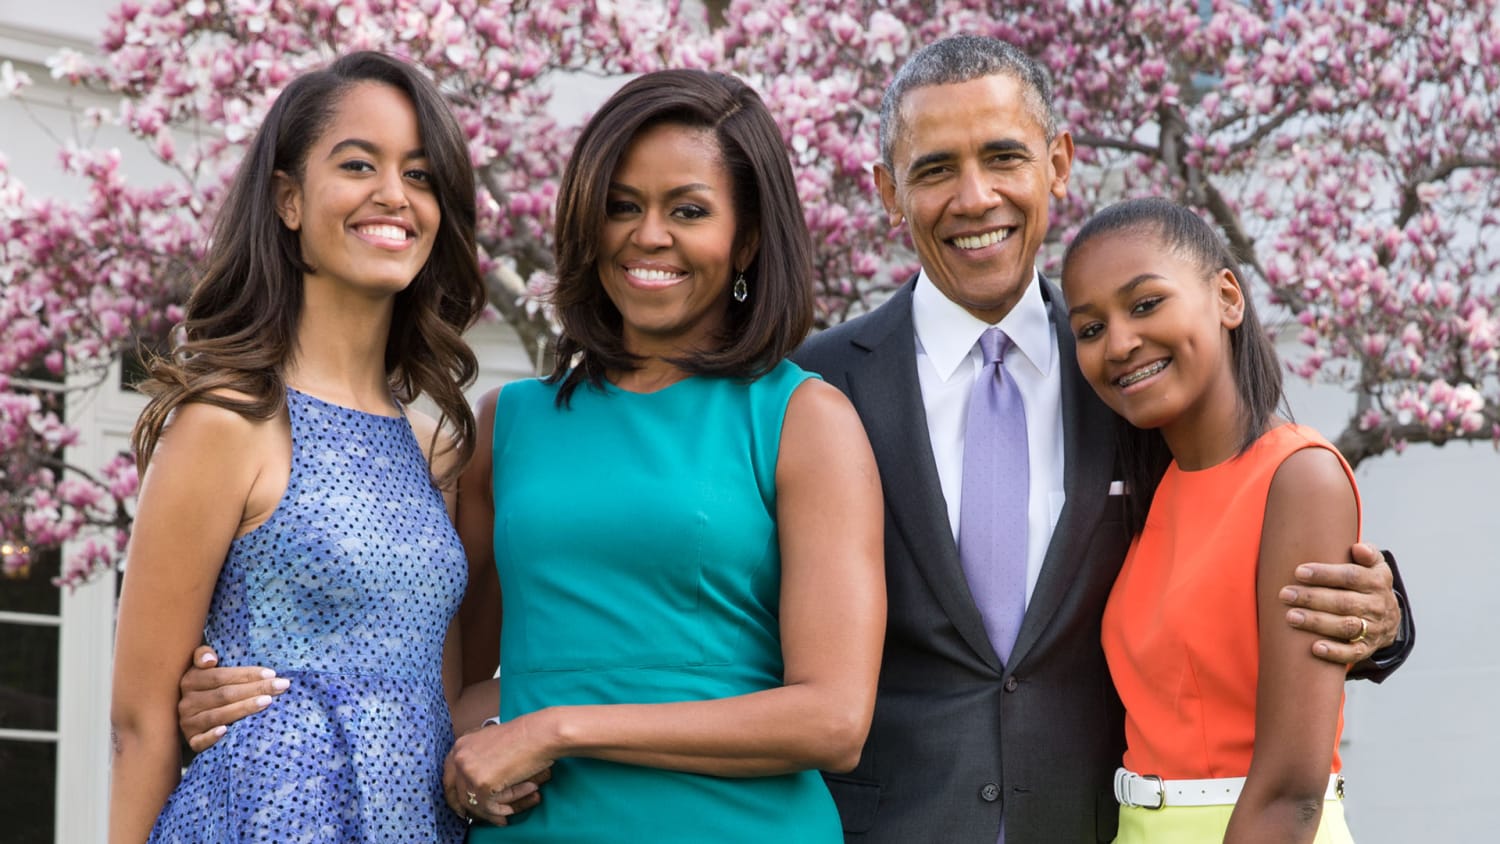 President Obama pens essay: White House made family life more normal - TODAY.com